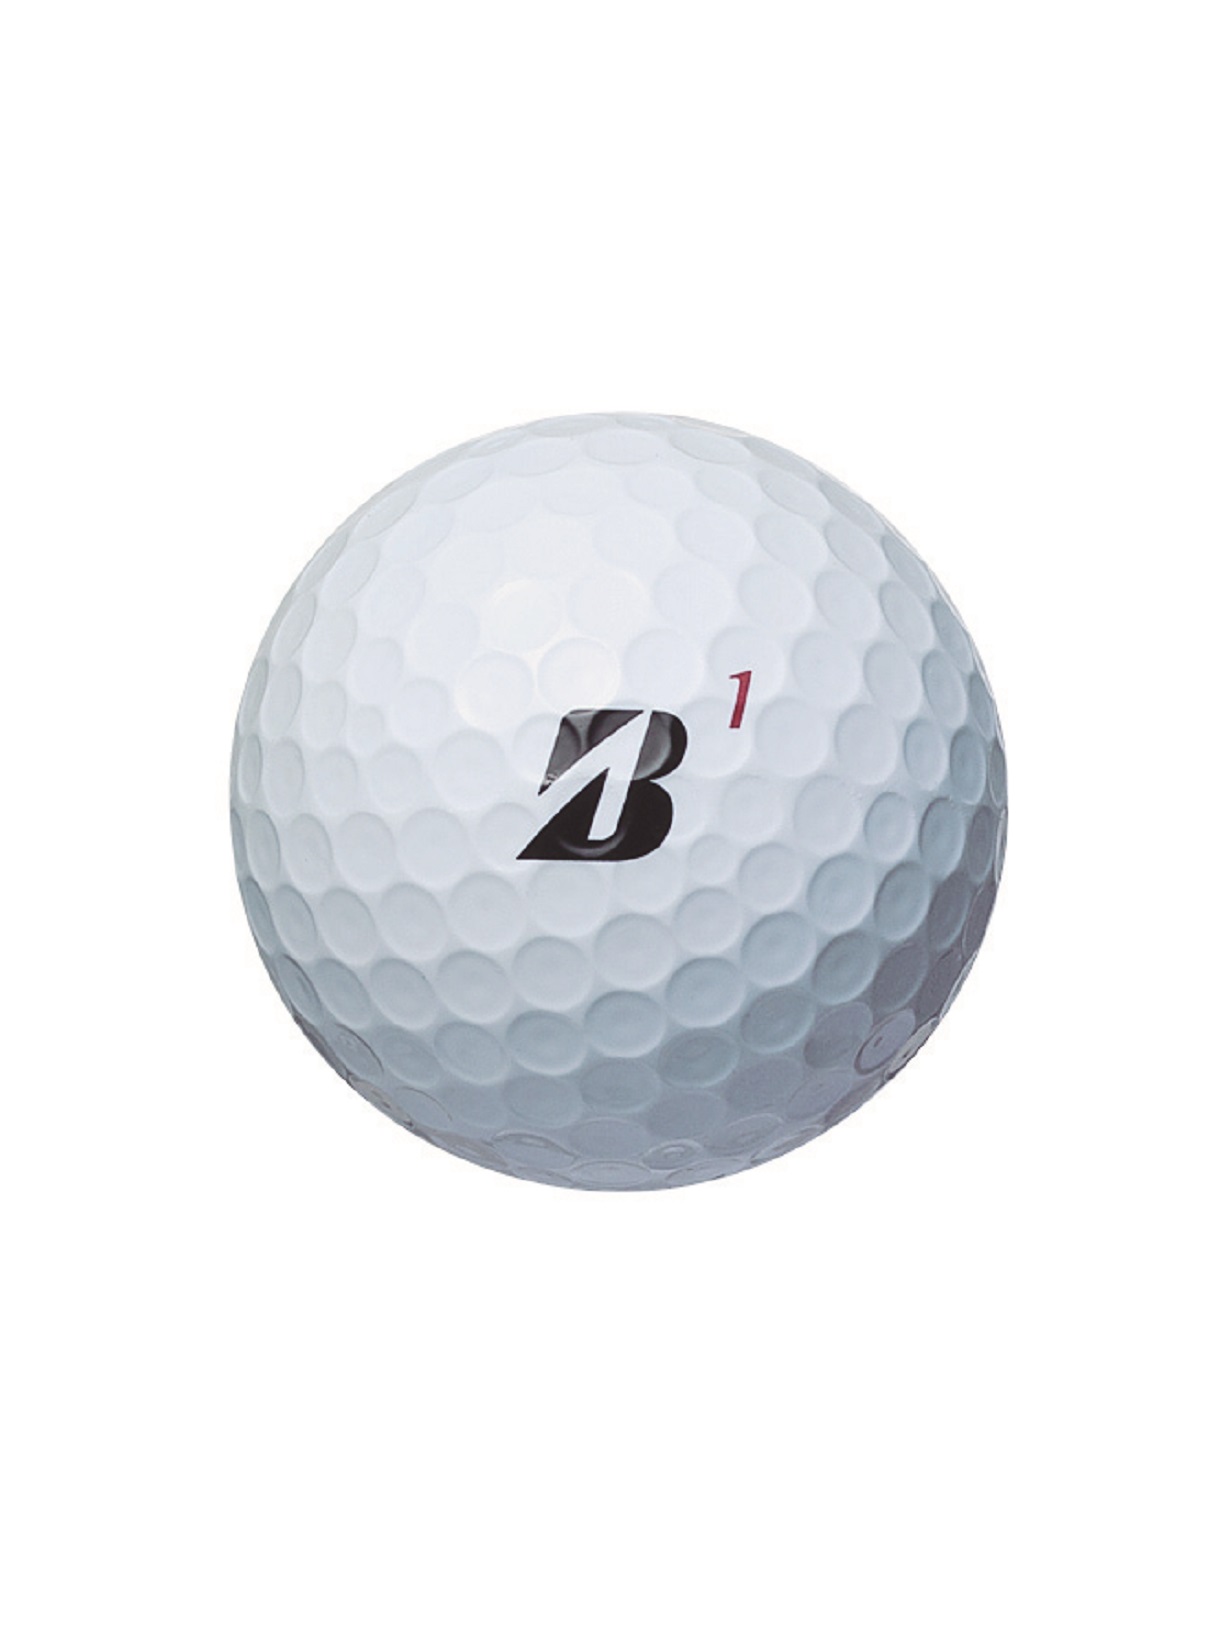 ブリヂストンゴルフ日本正規品 TOUR B Xシリーズ 2022モデル ゴルフボール1ダース(12個入)